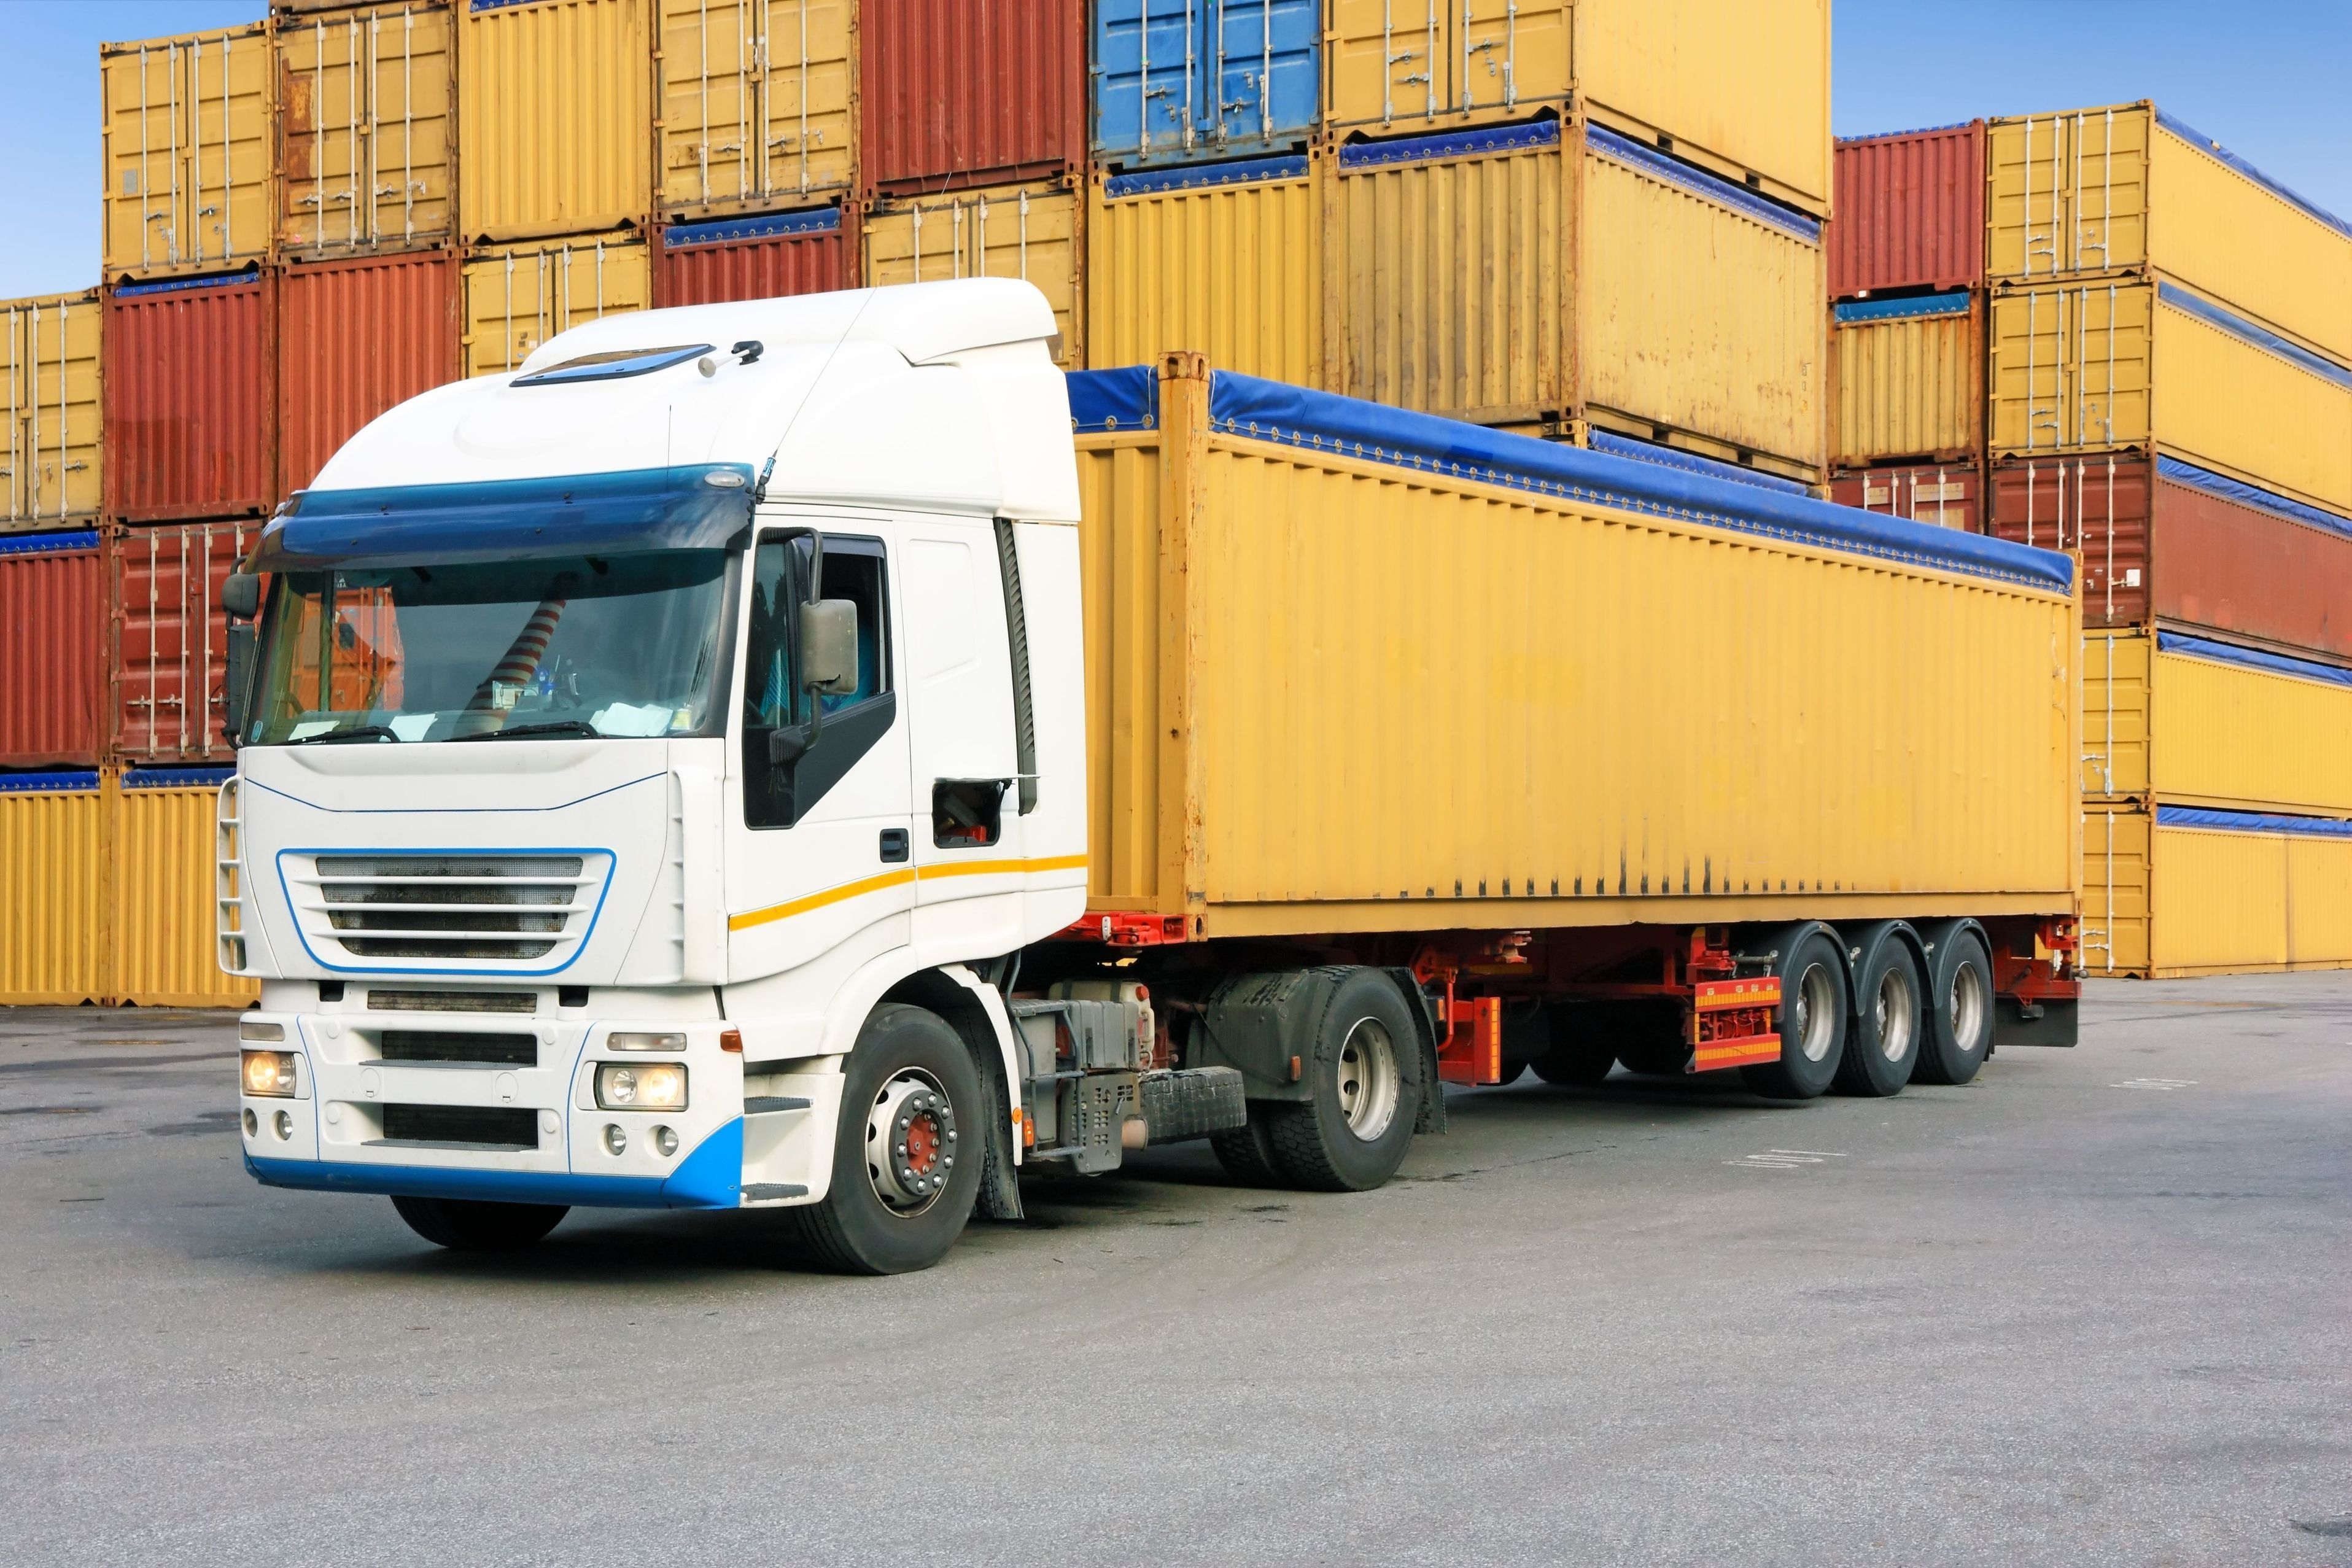 Доставка грузов из Испании в РФ может осуществляться морскими контейнерами